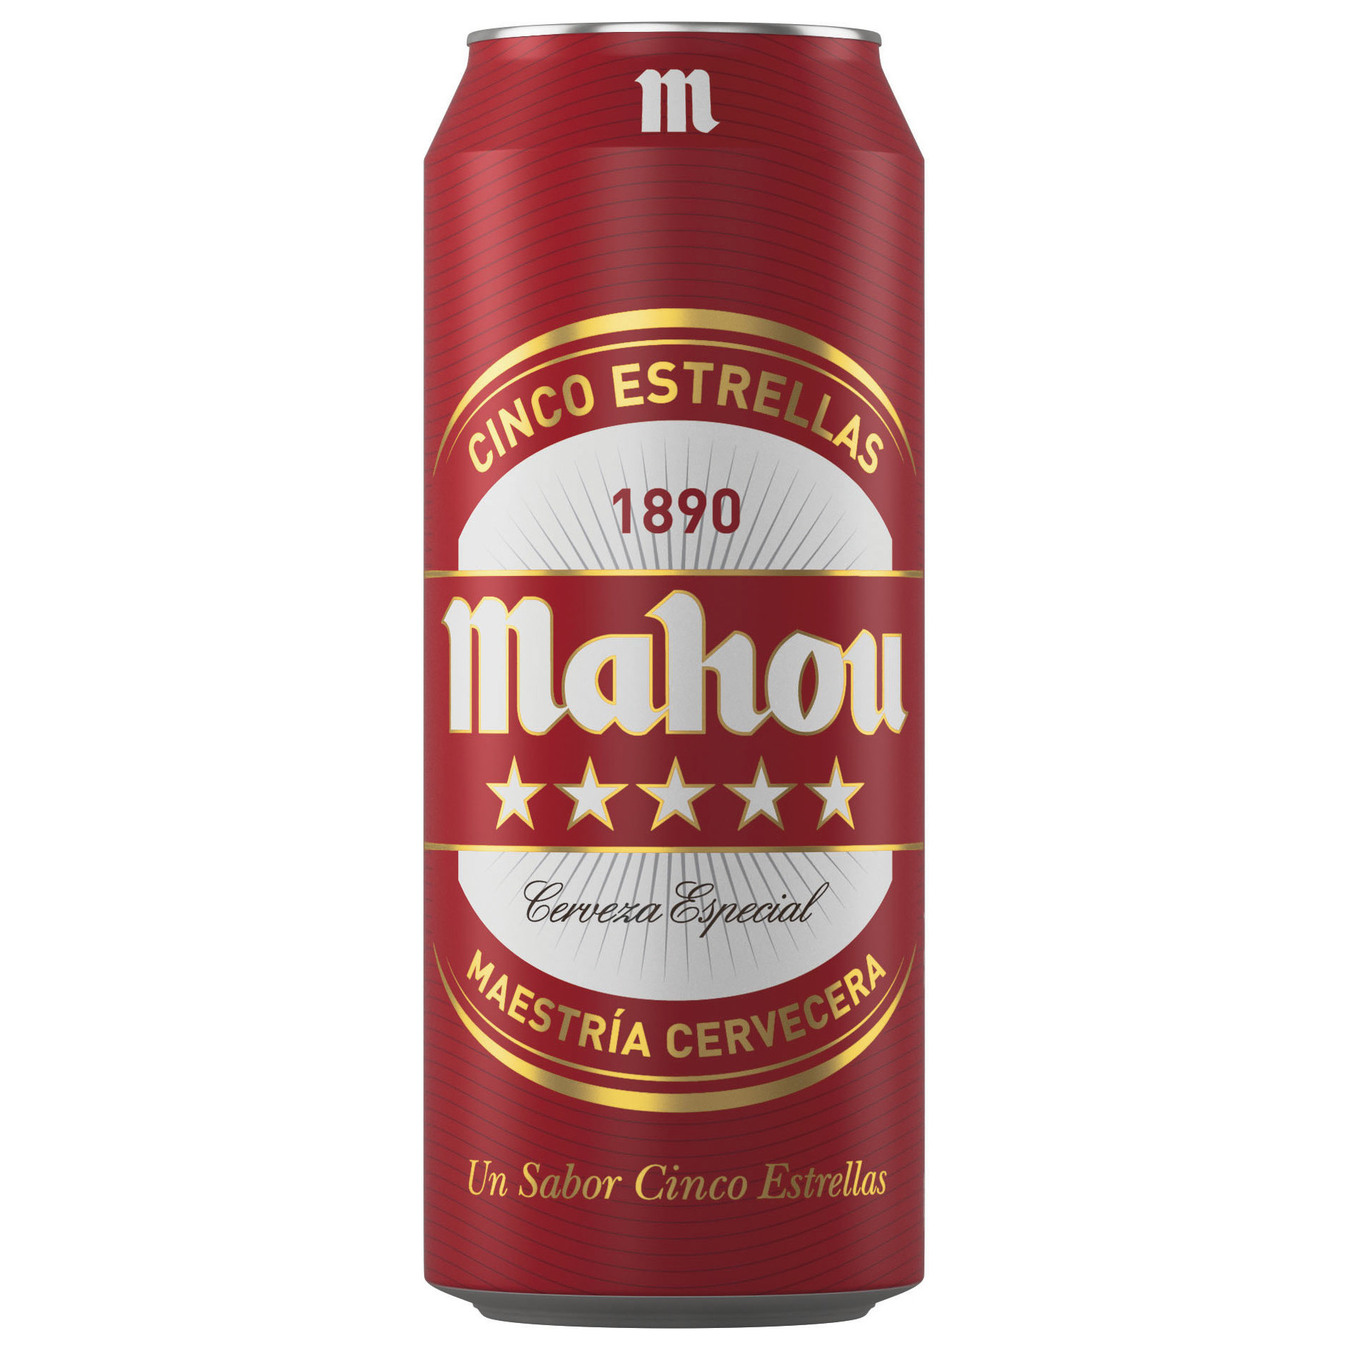 Пиво светлое Mahou 5 estrellas 5,5% 0,5л железная банка